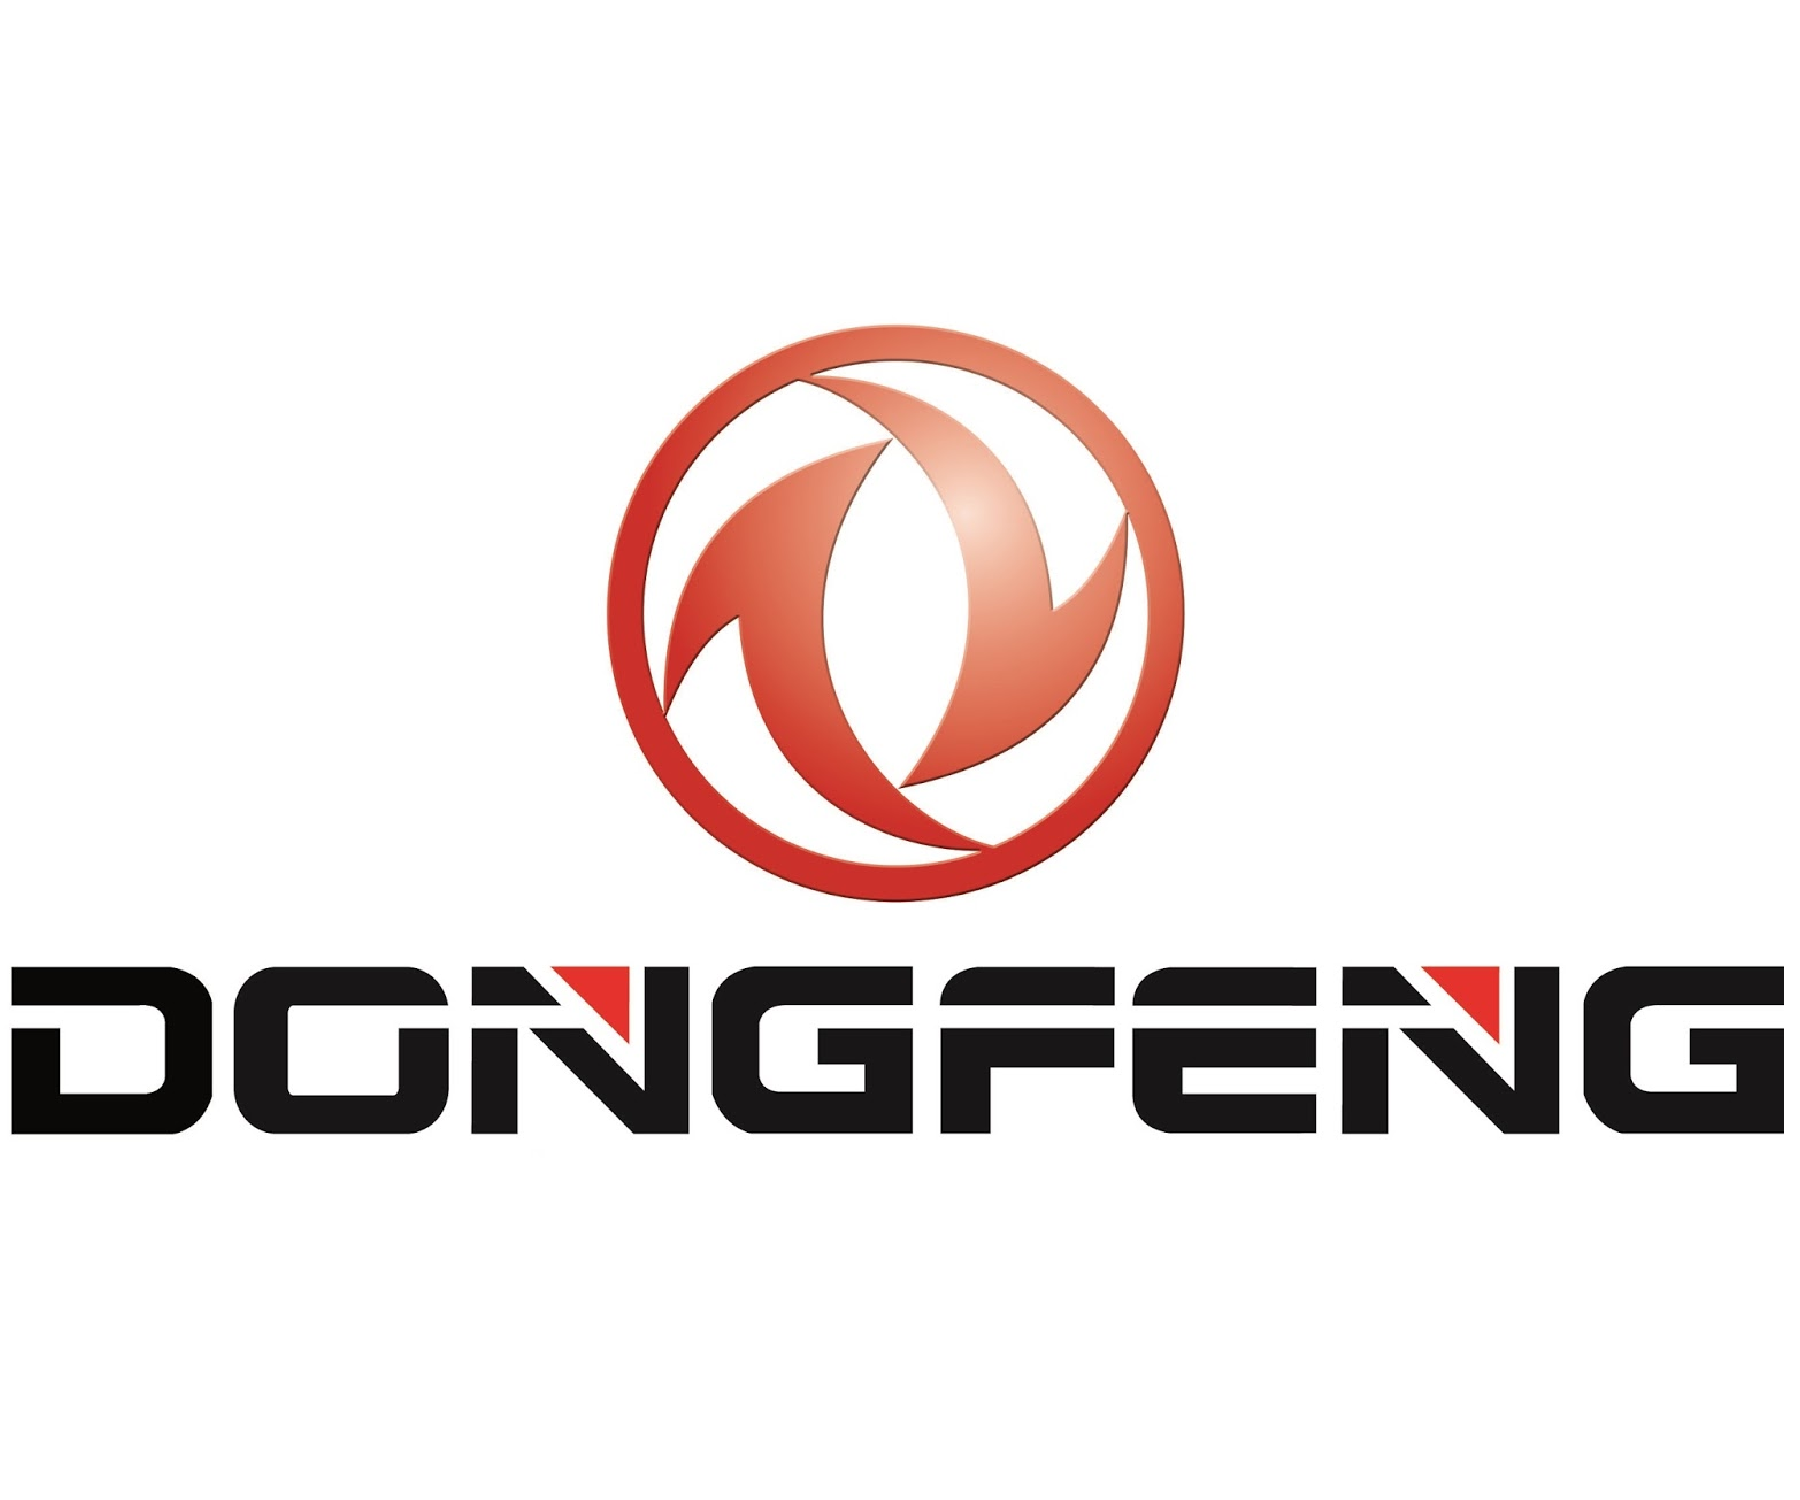 ремонт двигателя донг фенг, ремонт двигателей донг фенг, ремонт двигателя DongFeng, ремонт двигателей DongFeng